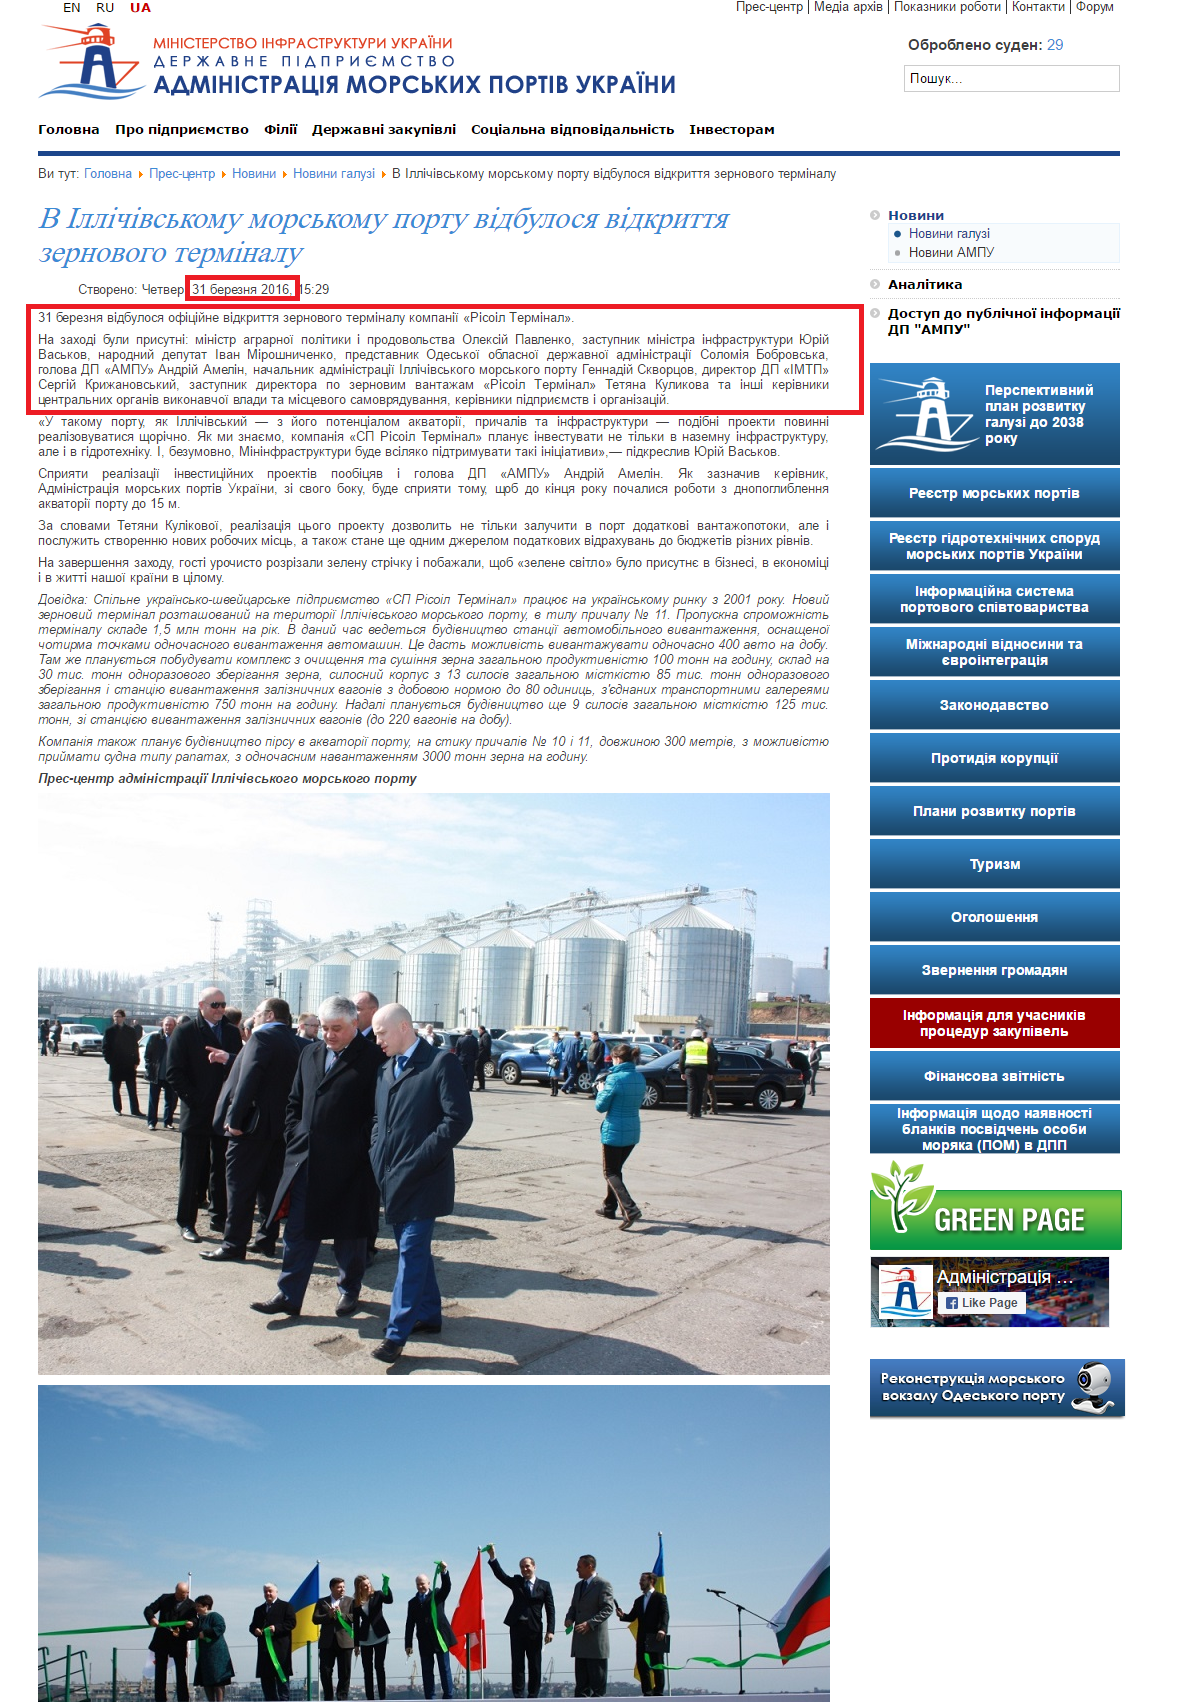 http://www.uspa.gov.ua/pres-tsentr/novini/novini-galuzi/12793-v-ilichevskom-morskom-portu-sostoyalos-otkrytie-zernovogo-terminala